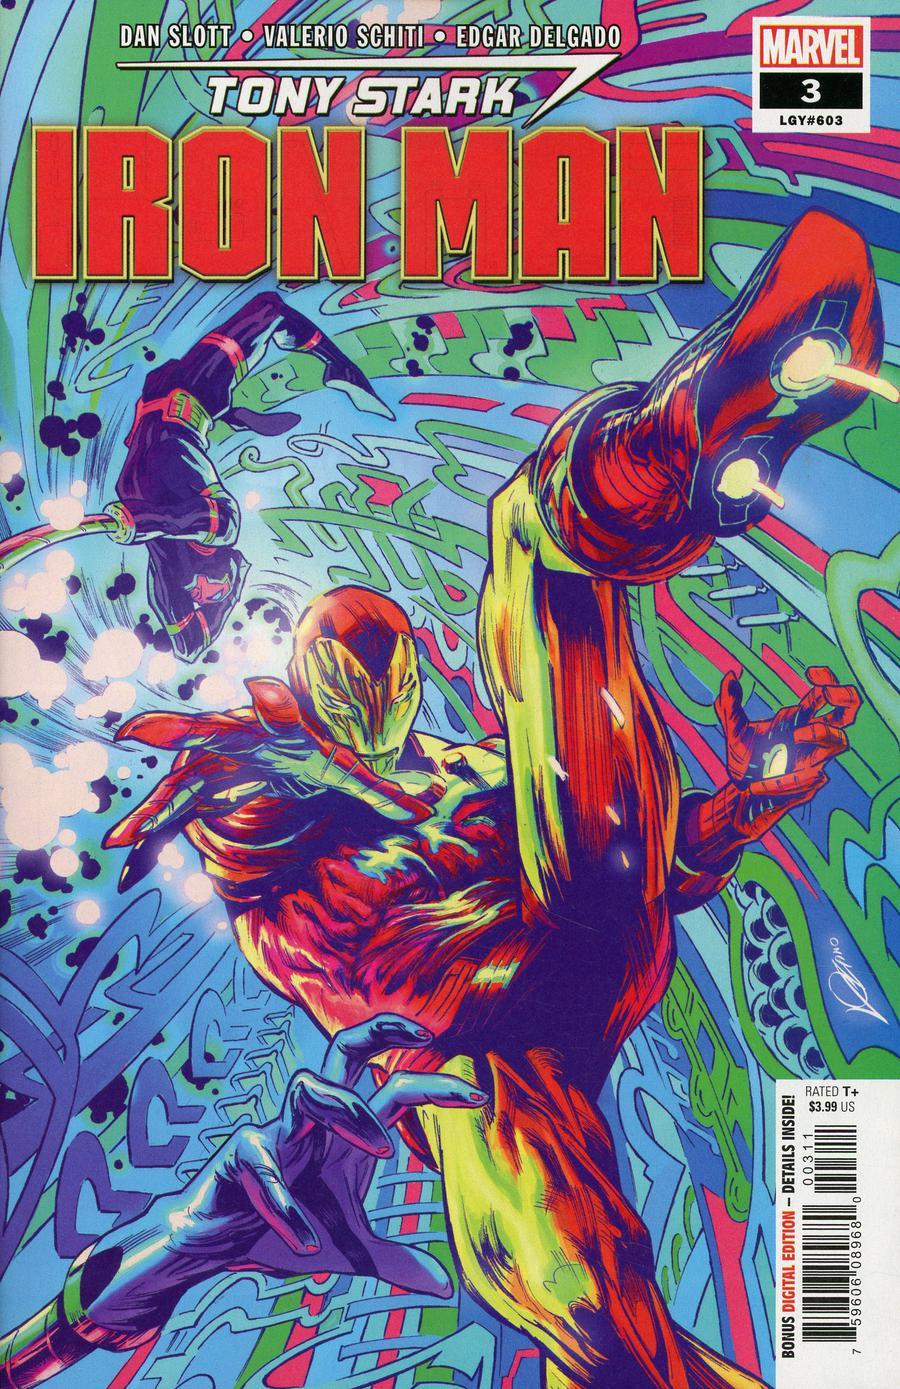 Tony Stark Iron Man Vol. 1 #3